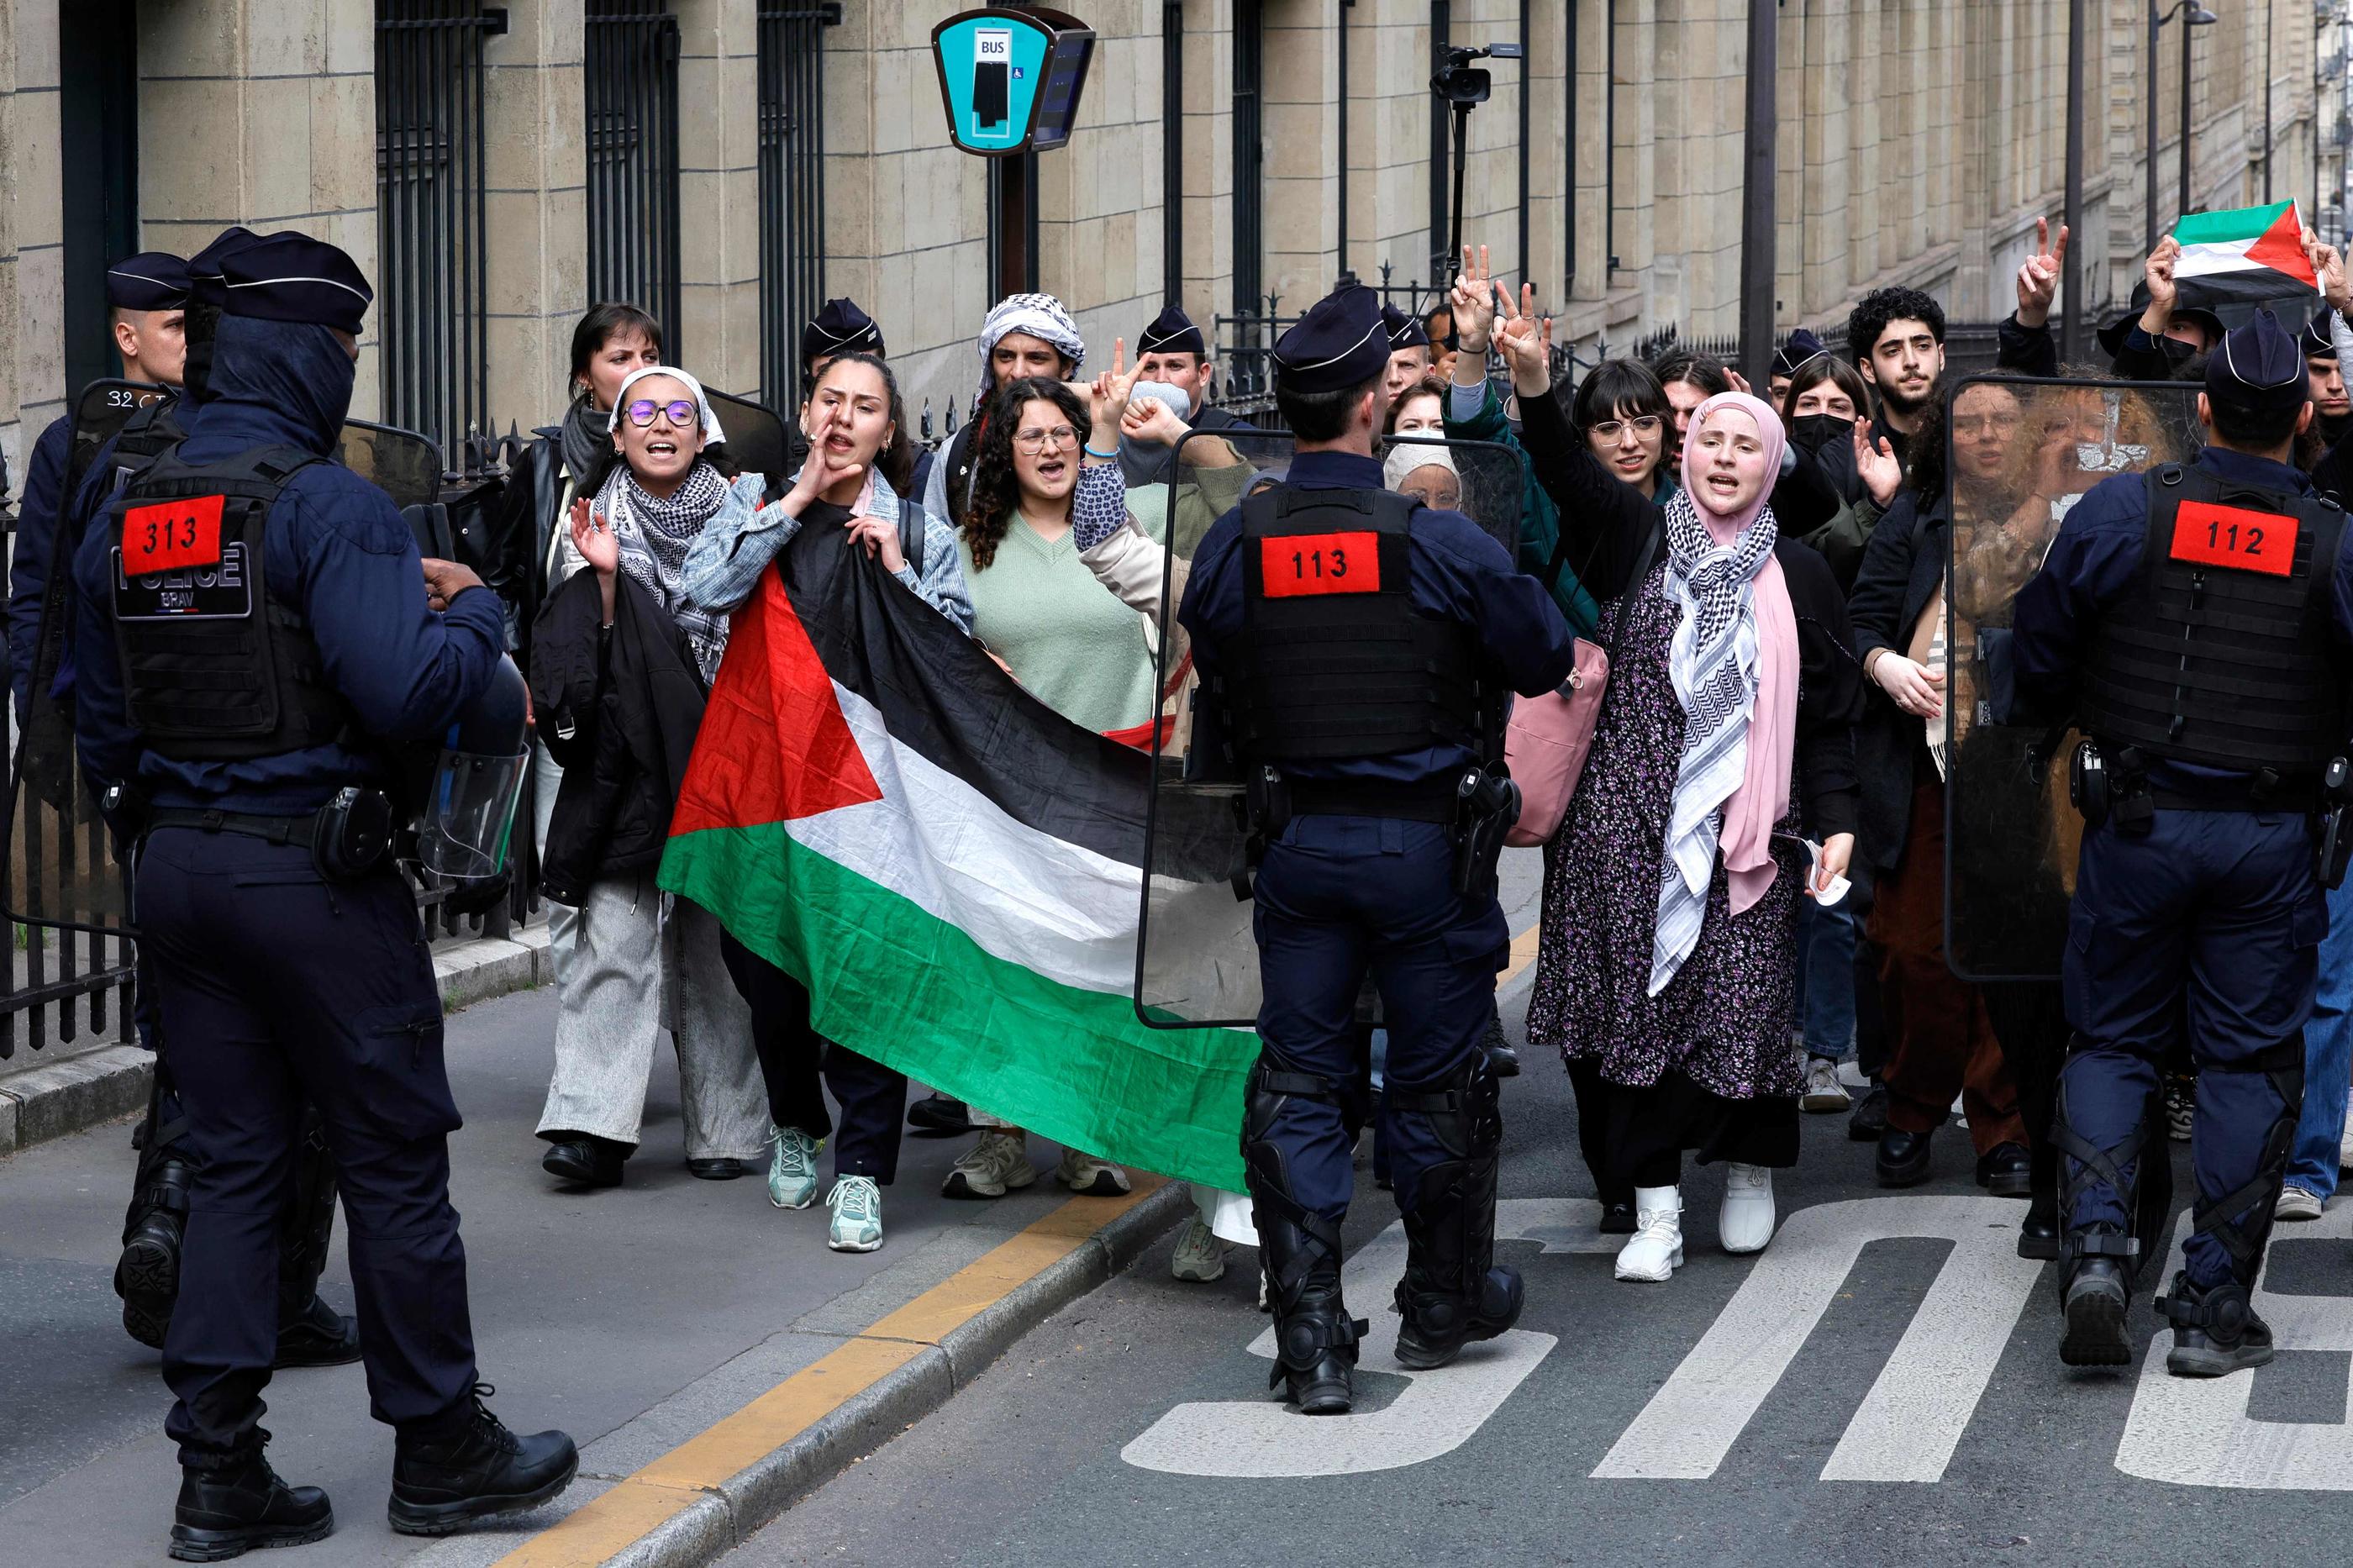 Les rassemblements et actions de blocage de militants propalestiniens sont devenus quotidiens à la Sorbonne, comme à Sciences-po Paris. (Illustration) AFP/Geoffroy Van der Hasselt